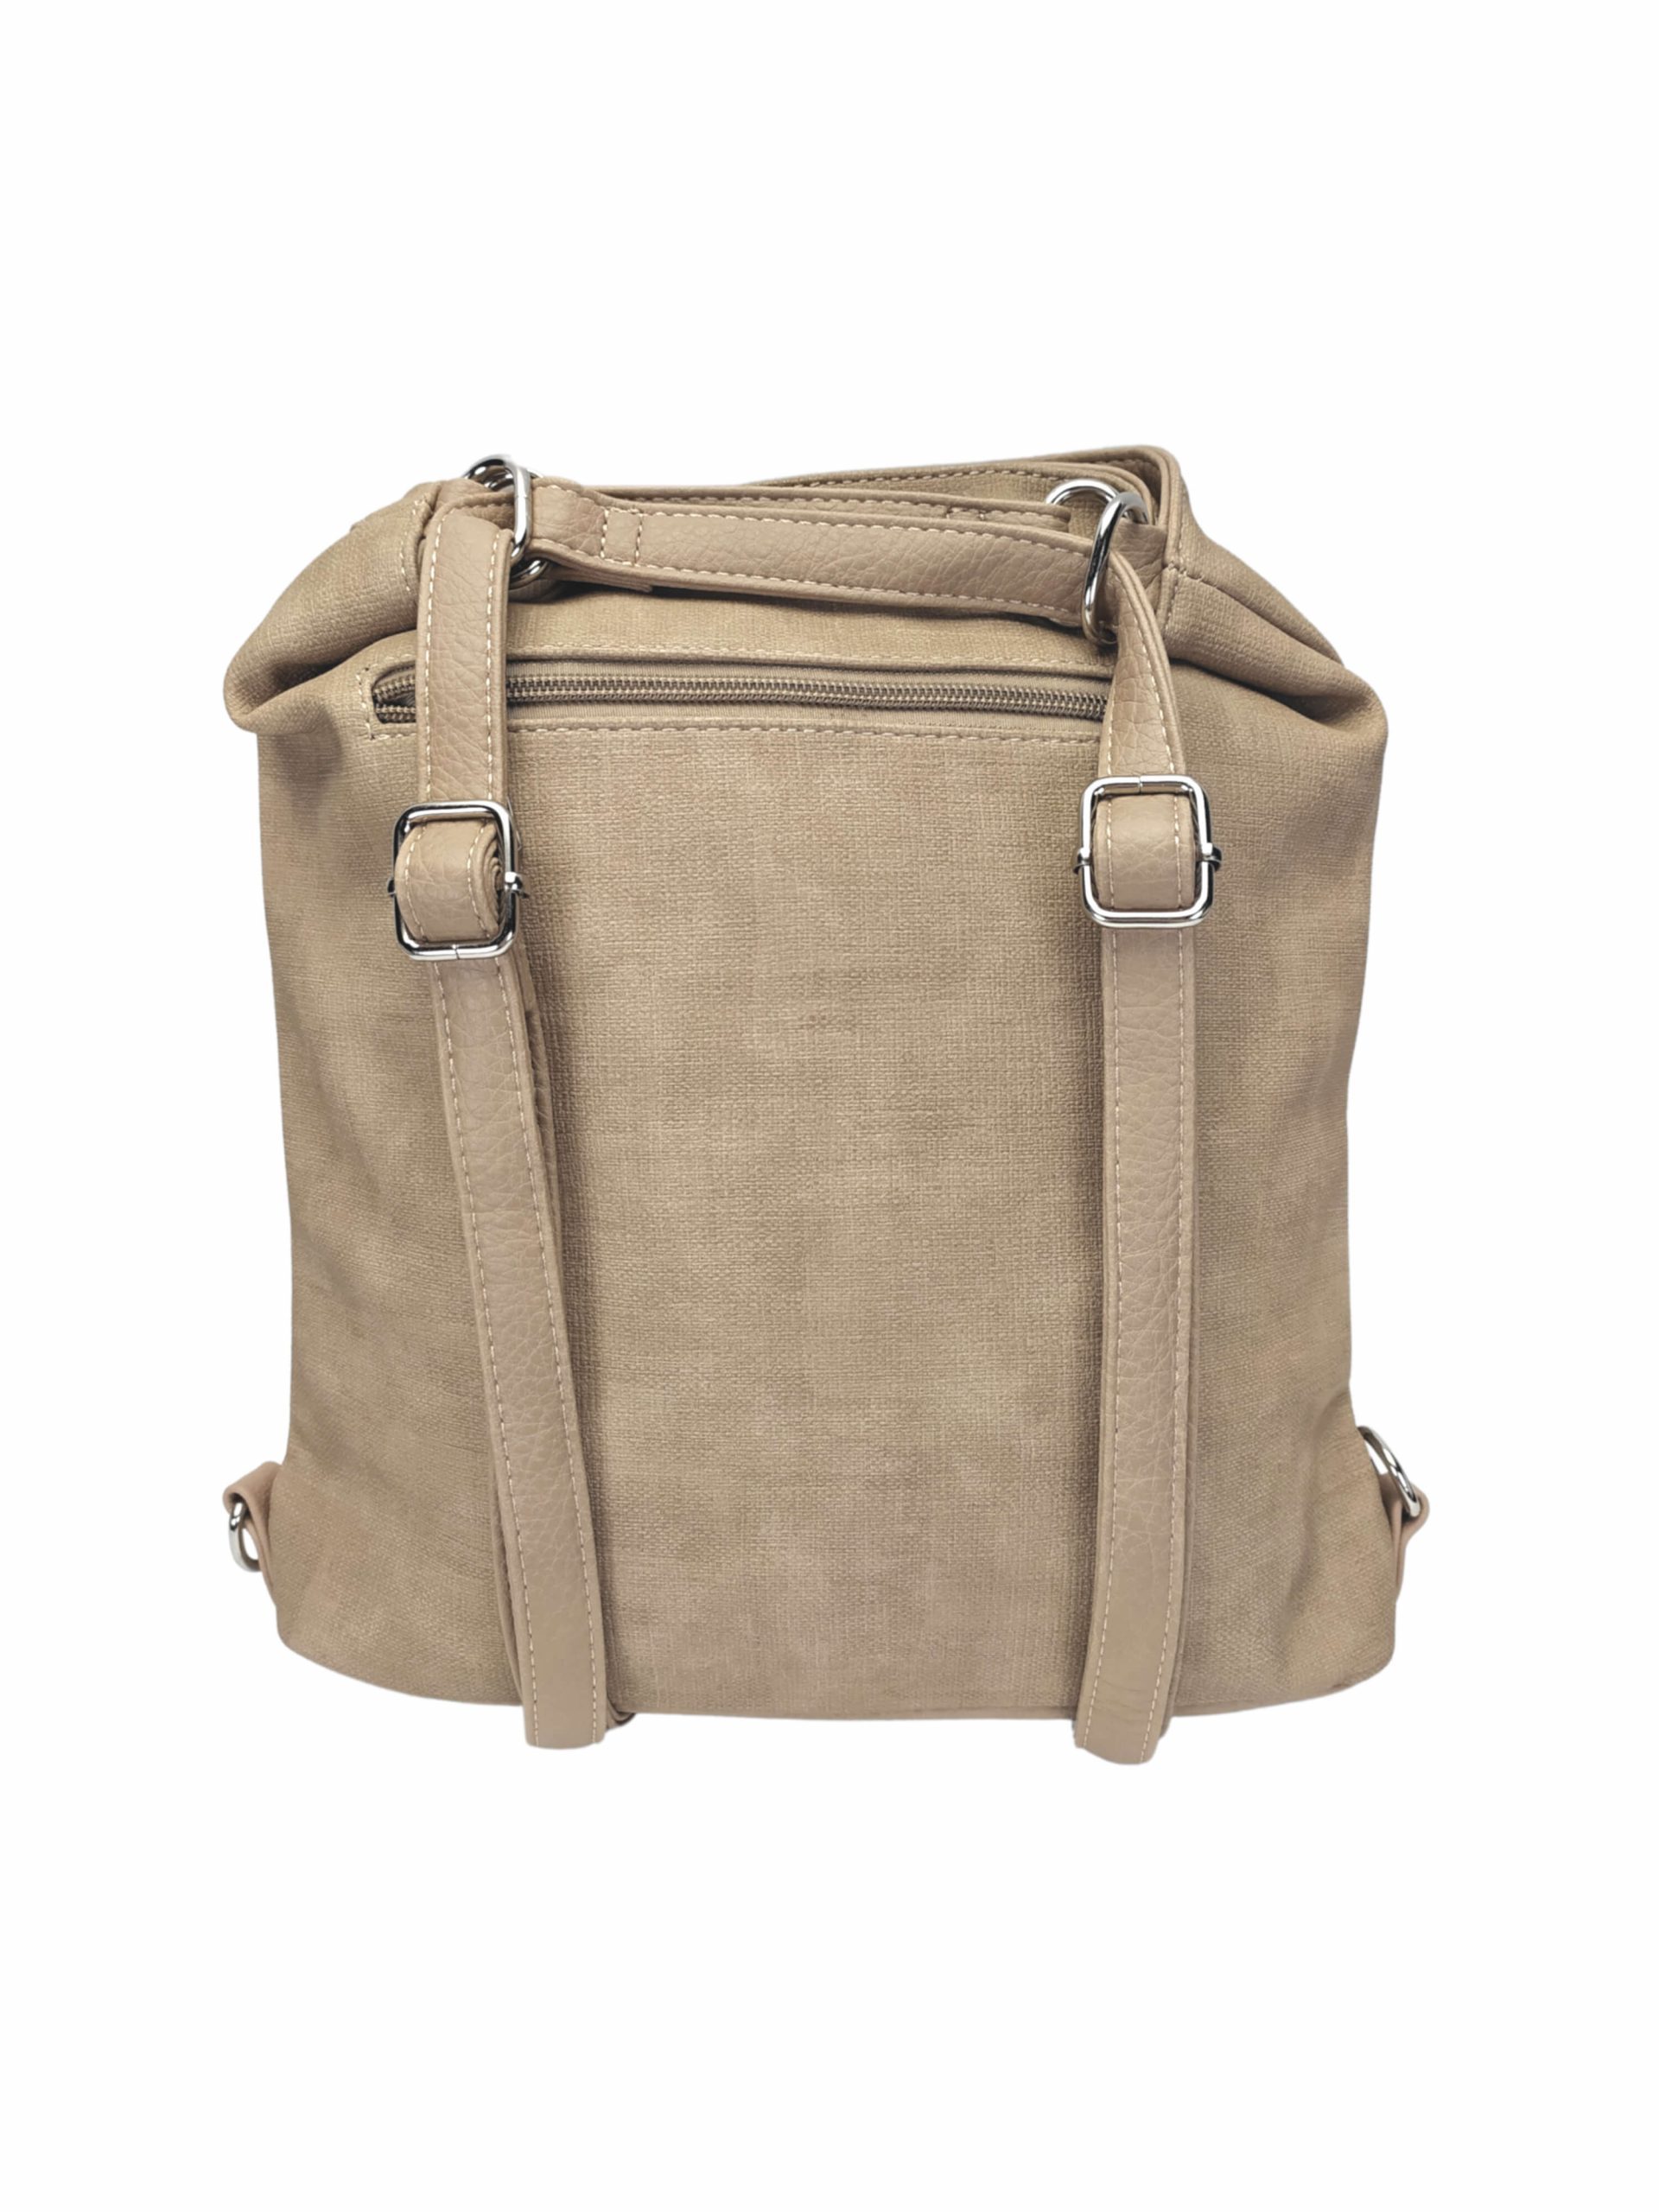 Střední světle hnědý kabelko-batoh 2v1 s šikmým zipem, Tapple, H190061, zadní strana kabelko-batohu 2v1 s popruhy